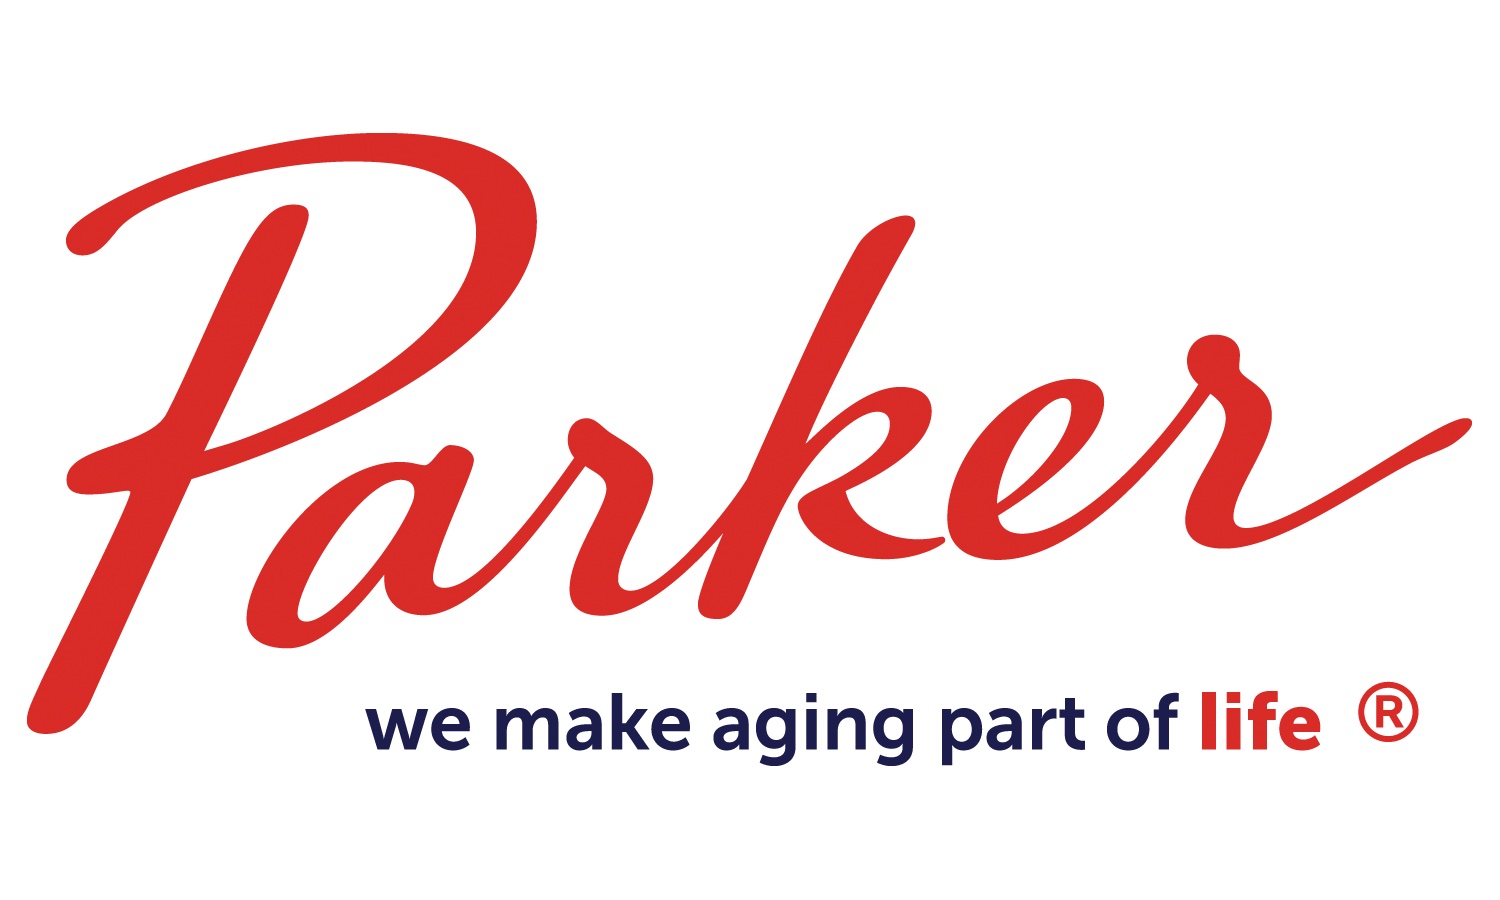 Parker Health Group logo